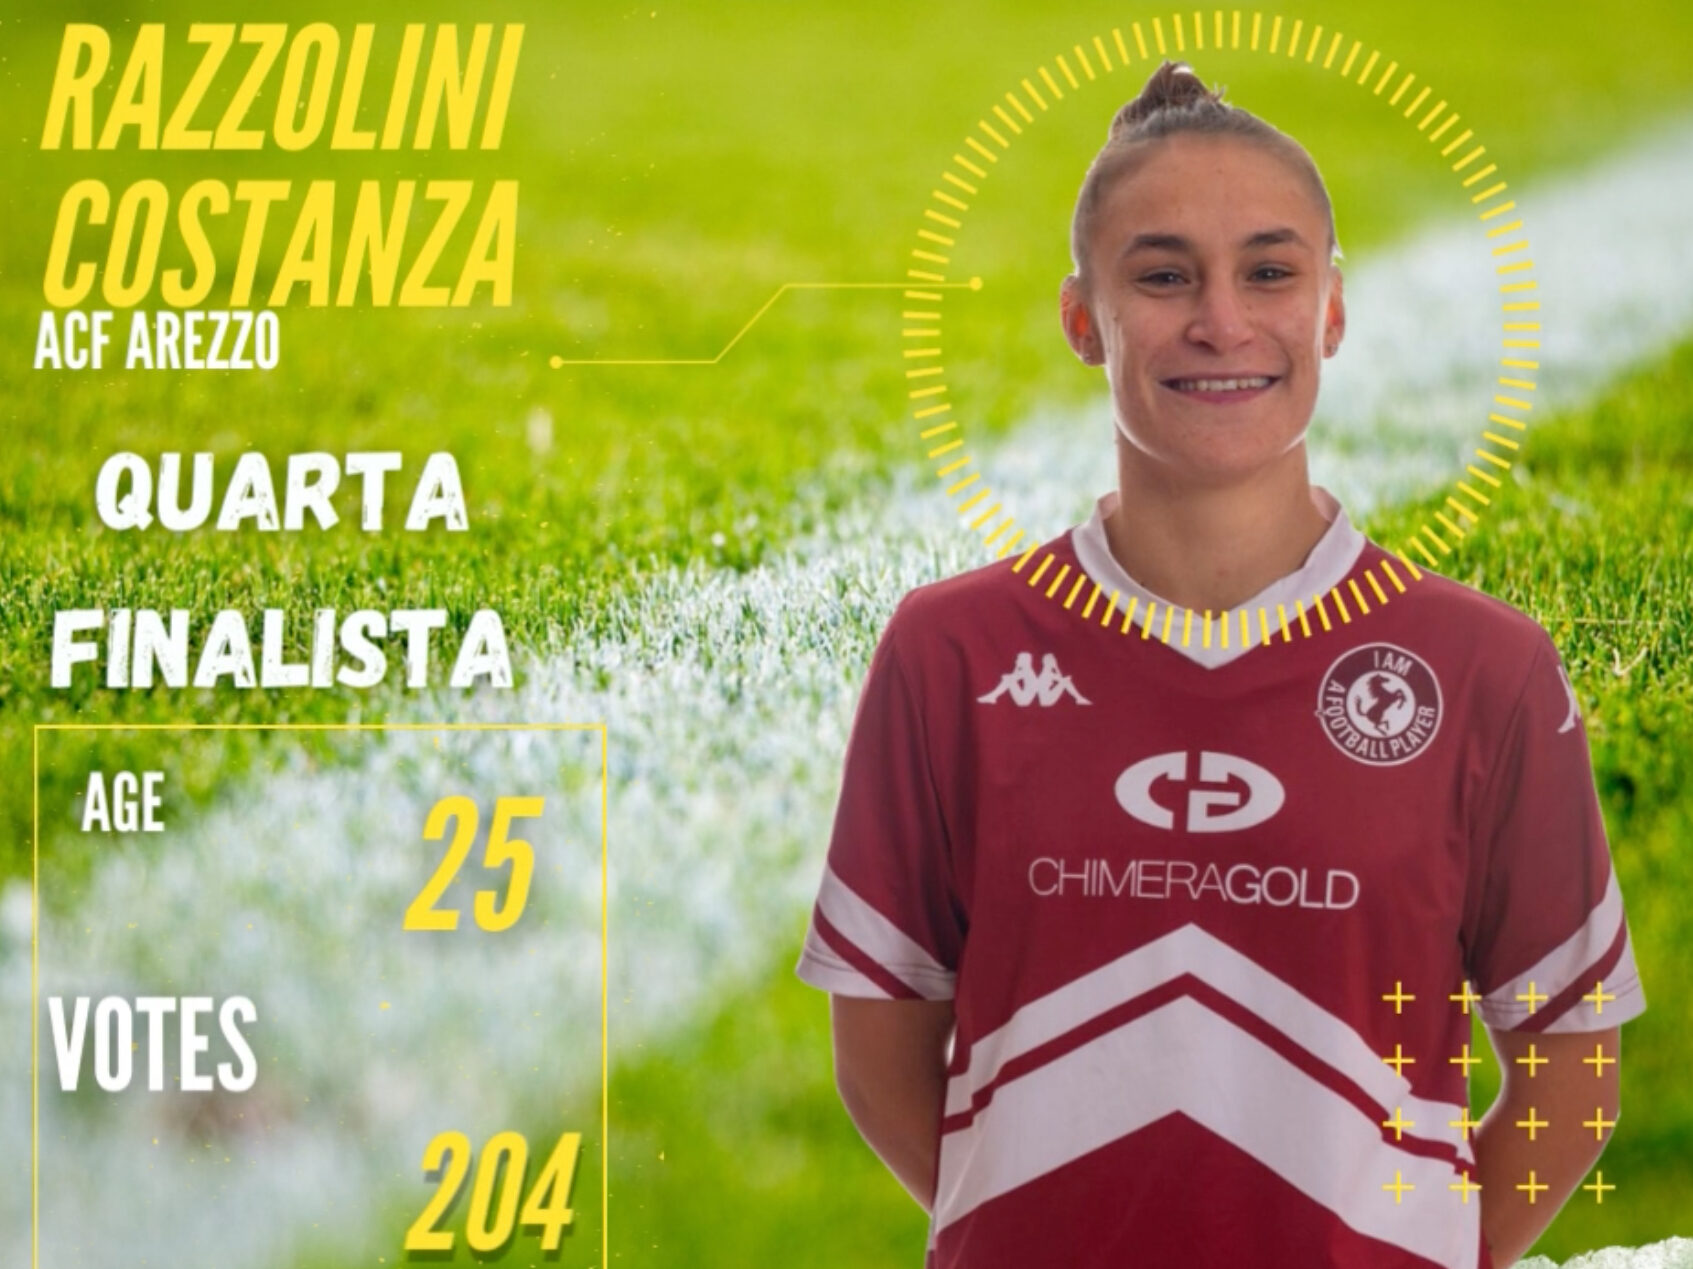 Pallone d’Oro femminile: Razzolini quarta finalista